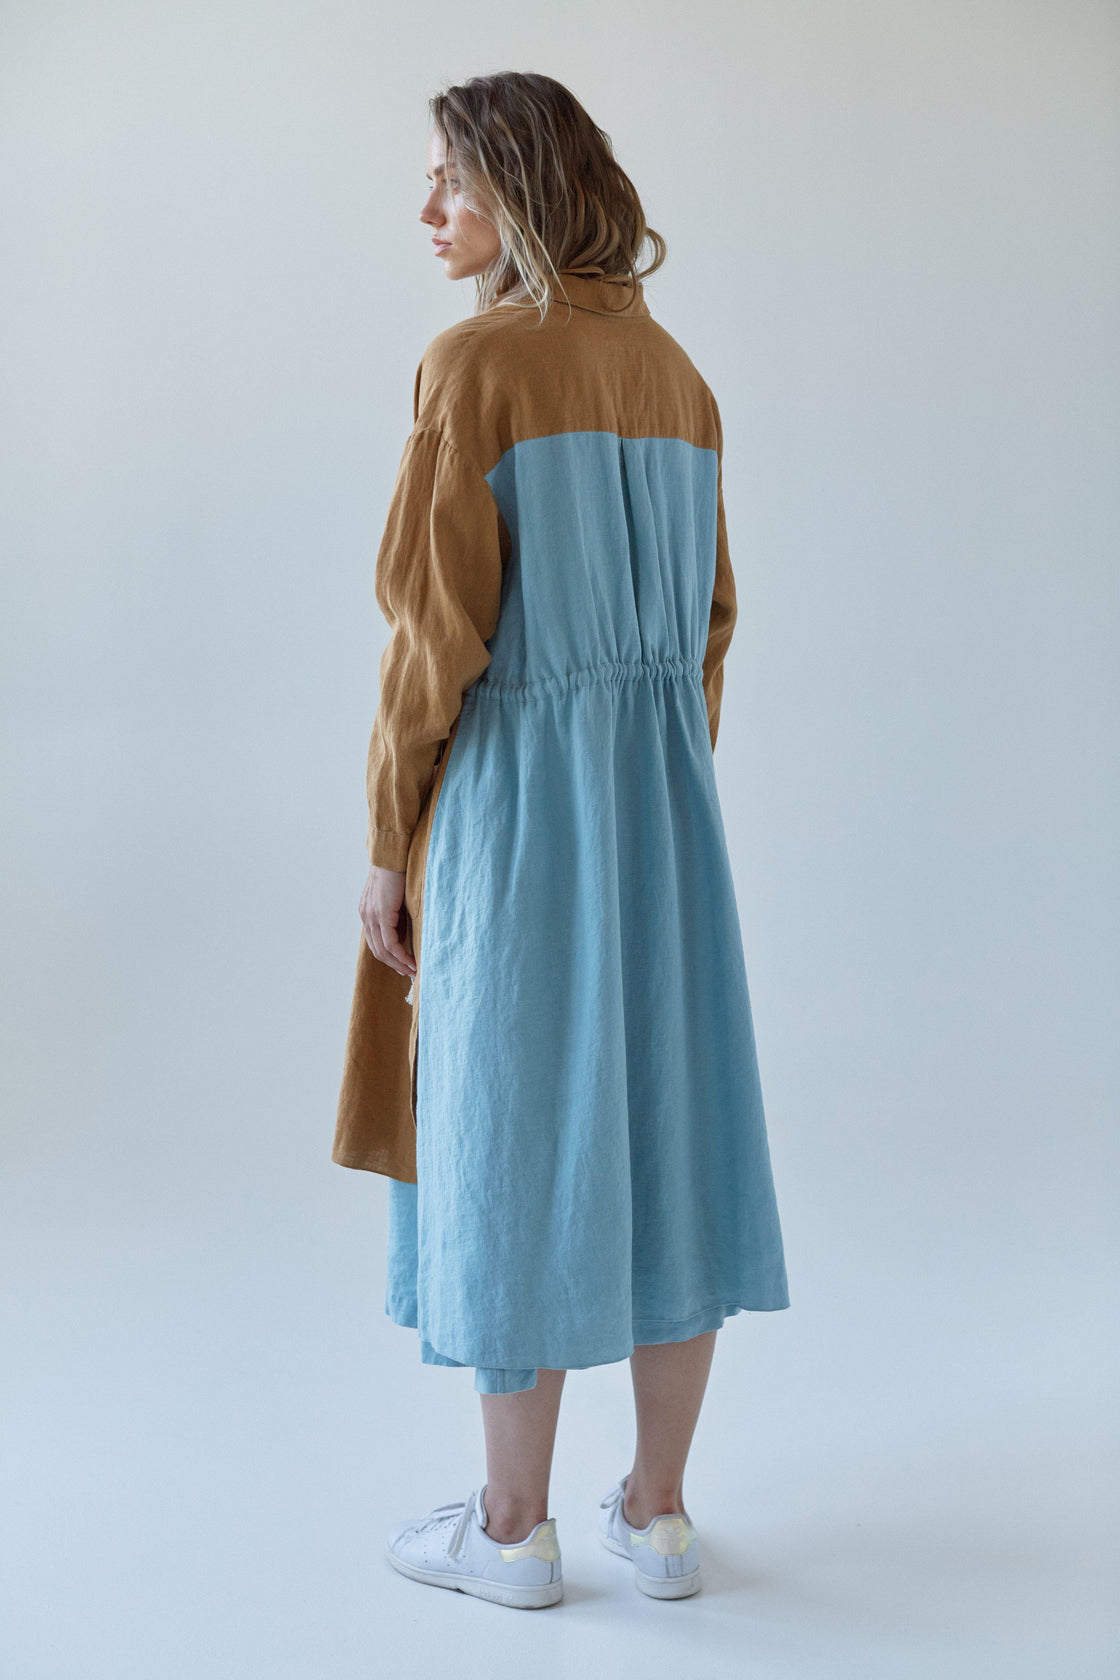 two-tone blue brown linen dress - Manufacture de Lin